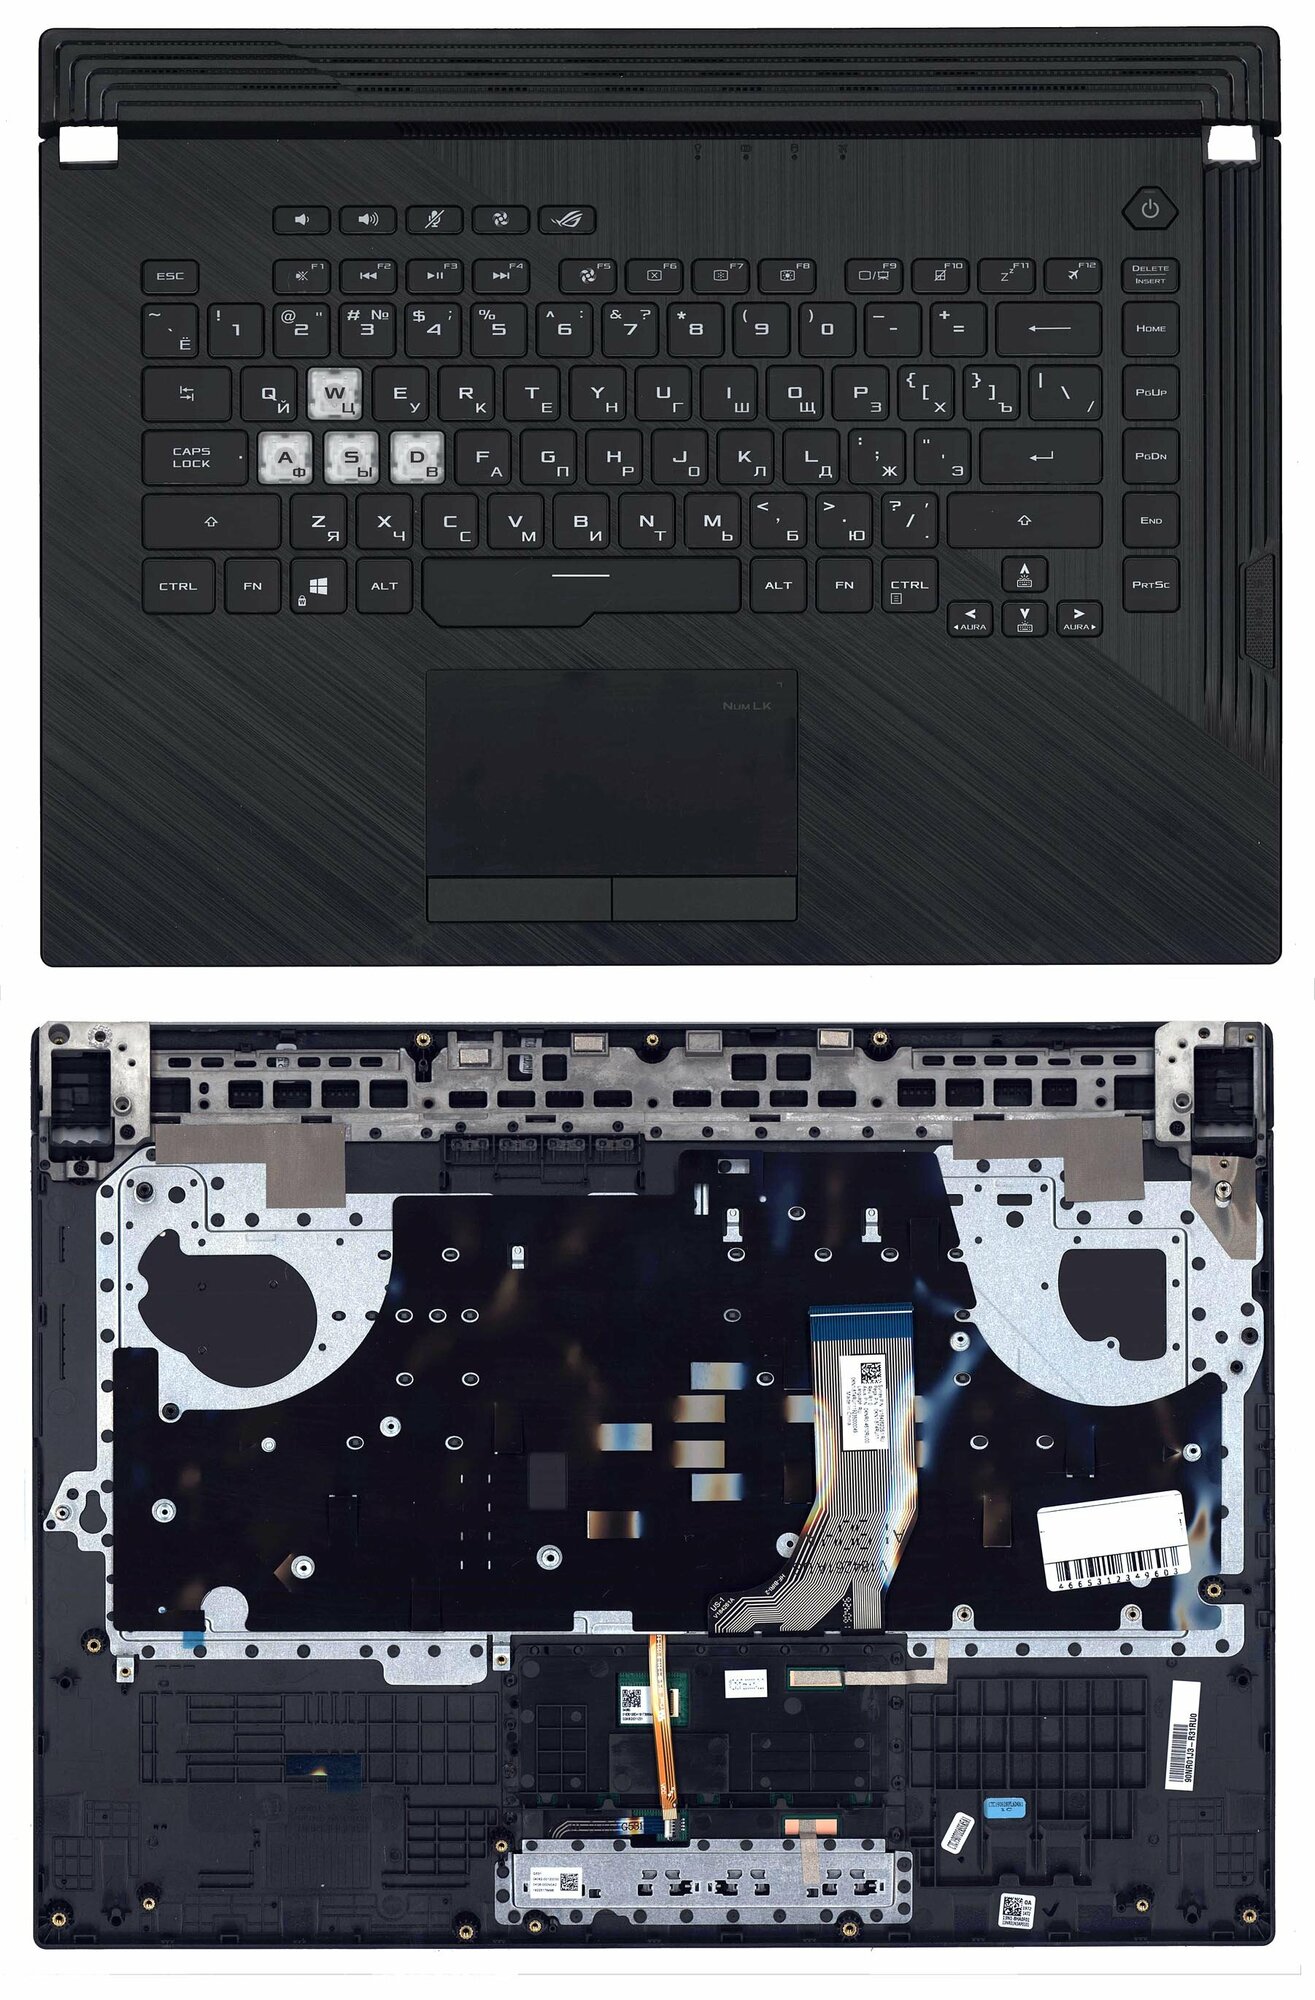 Клавиатура для ноутбука Asus ROG Strix G531GU с подсветкой RGB топкейс